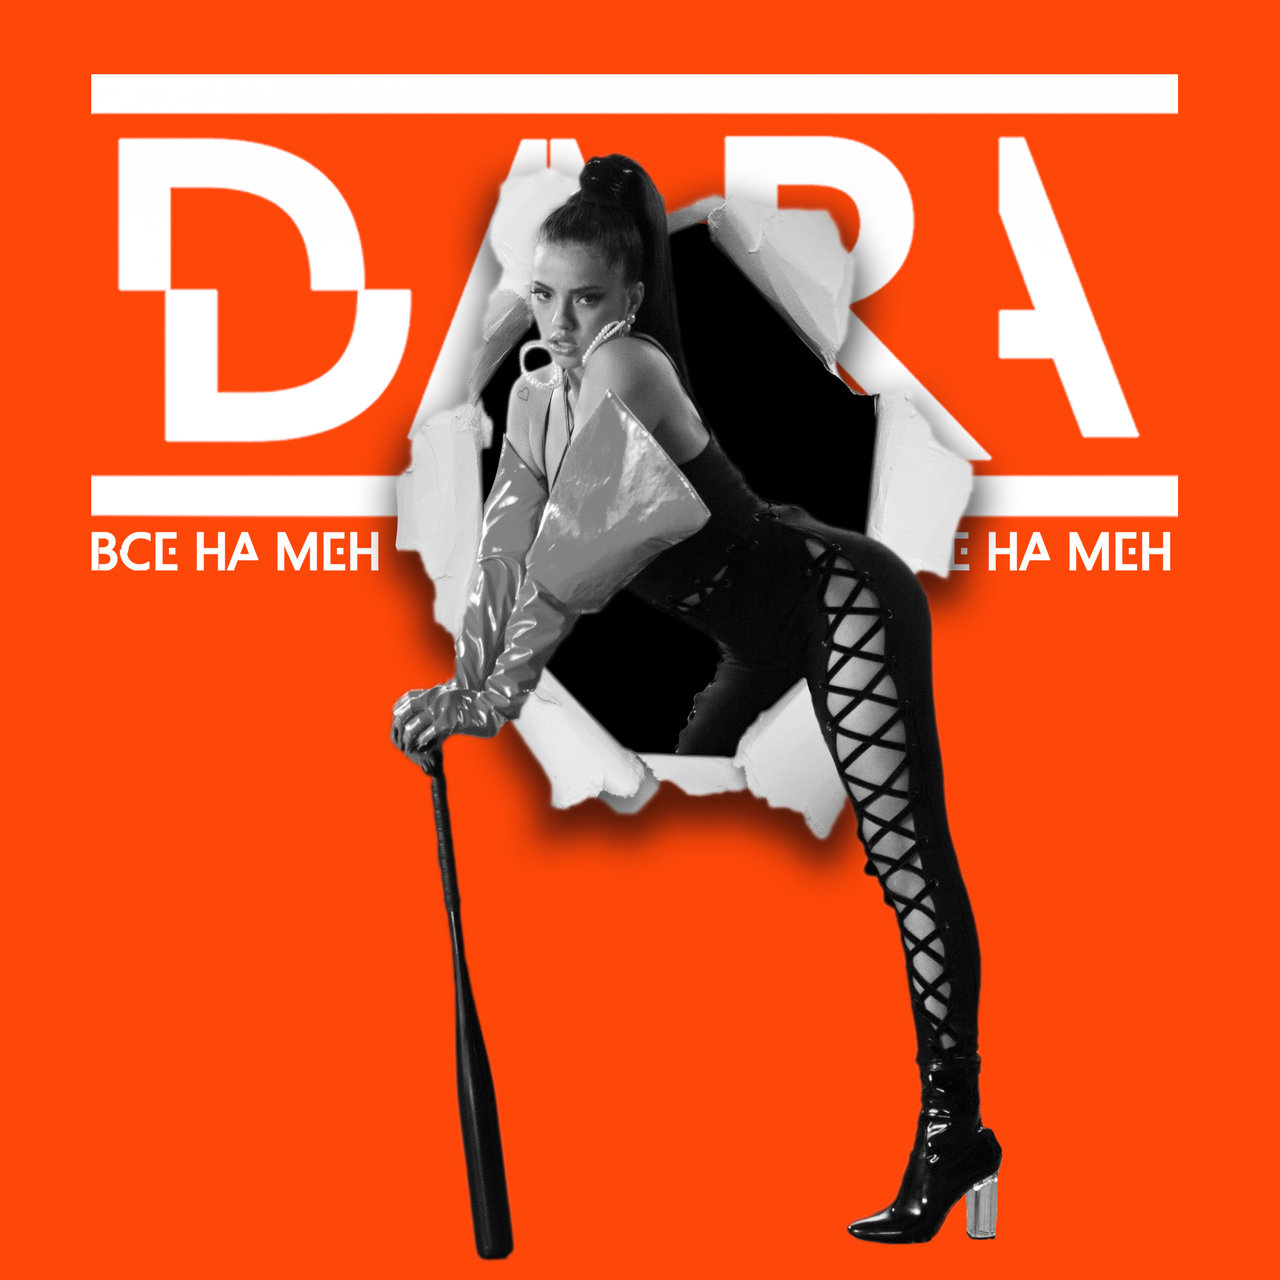 DARA Vse Na Men cover artwork